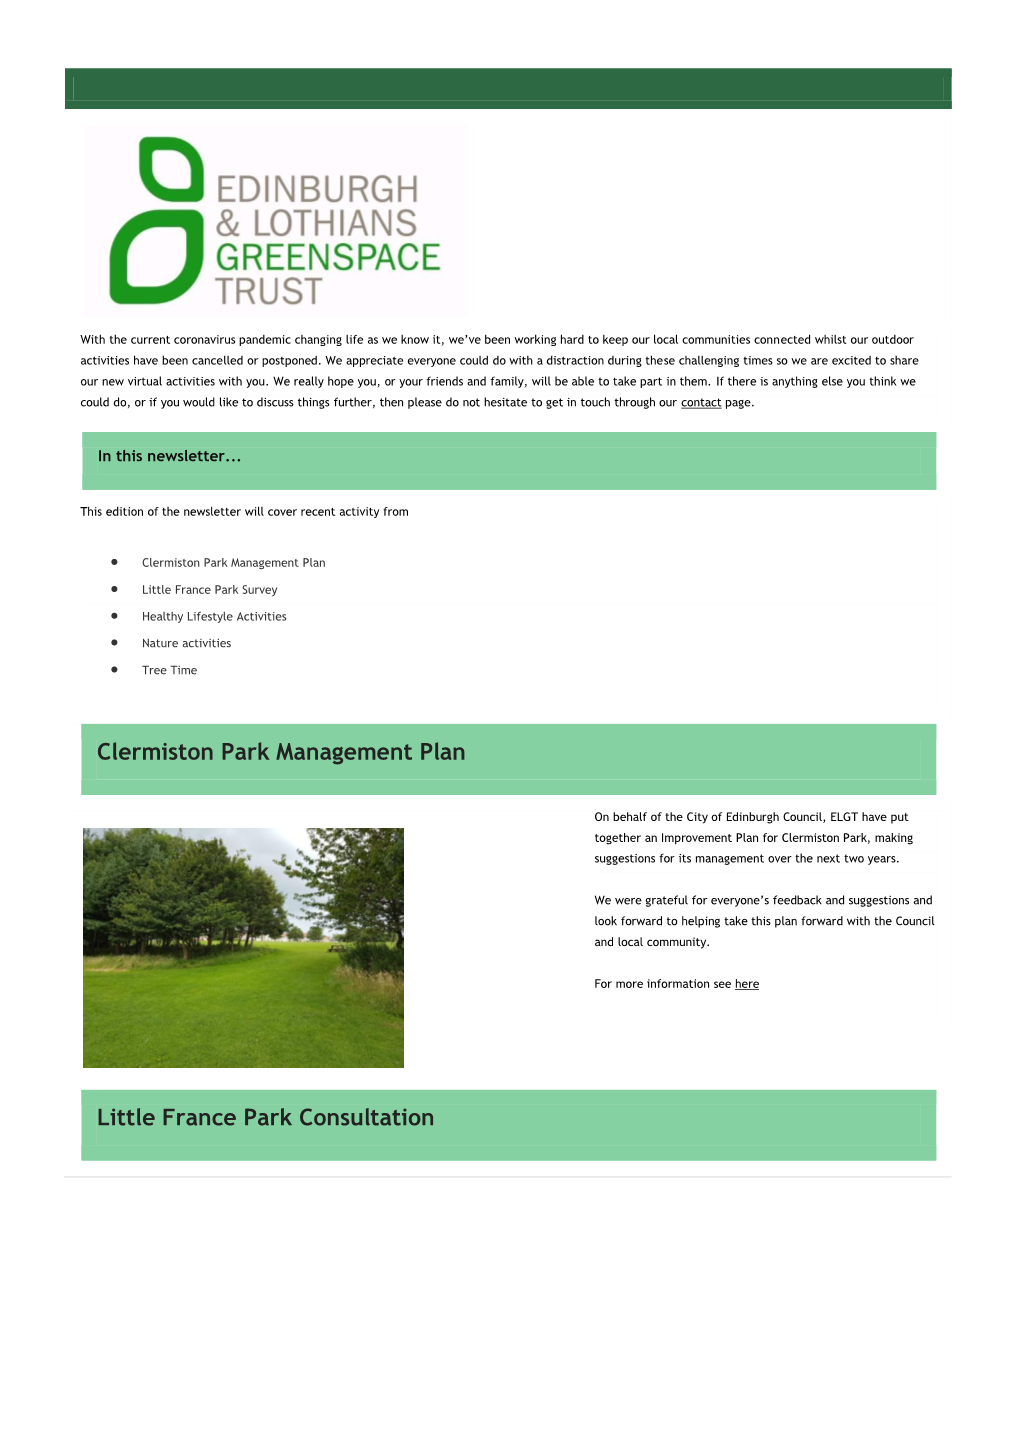 Clermiston Park Management Plan Little France Park Consultation